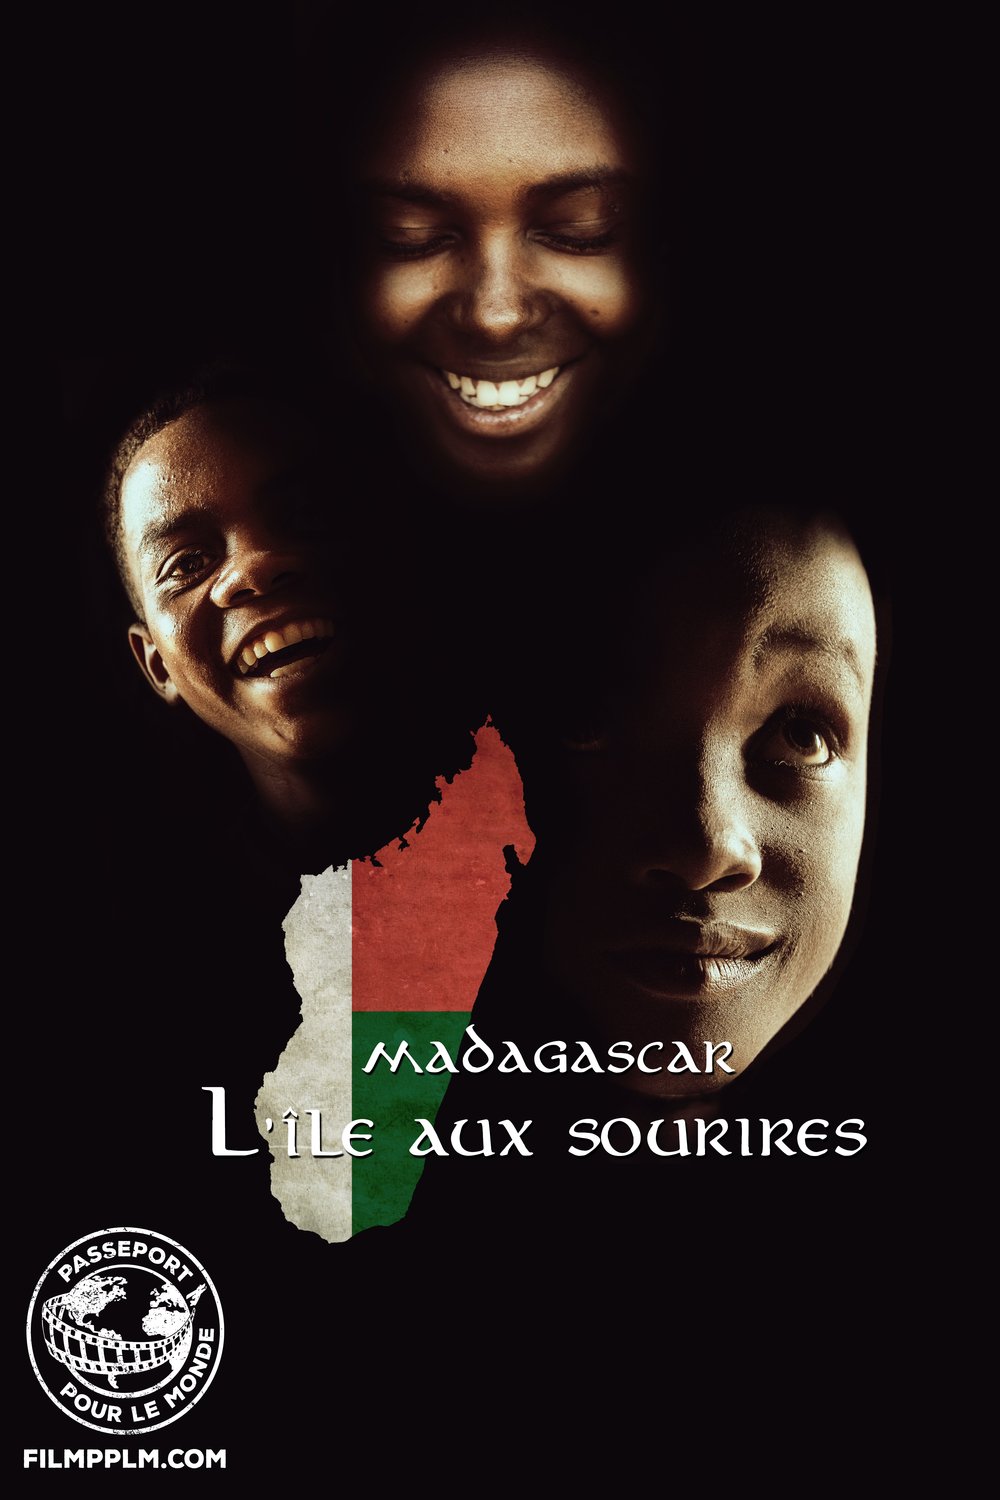 Poster of the movie Passeport pour le Monde: Madagascar: L'île aux sourires